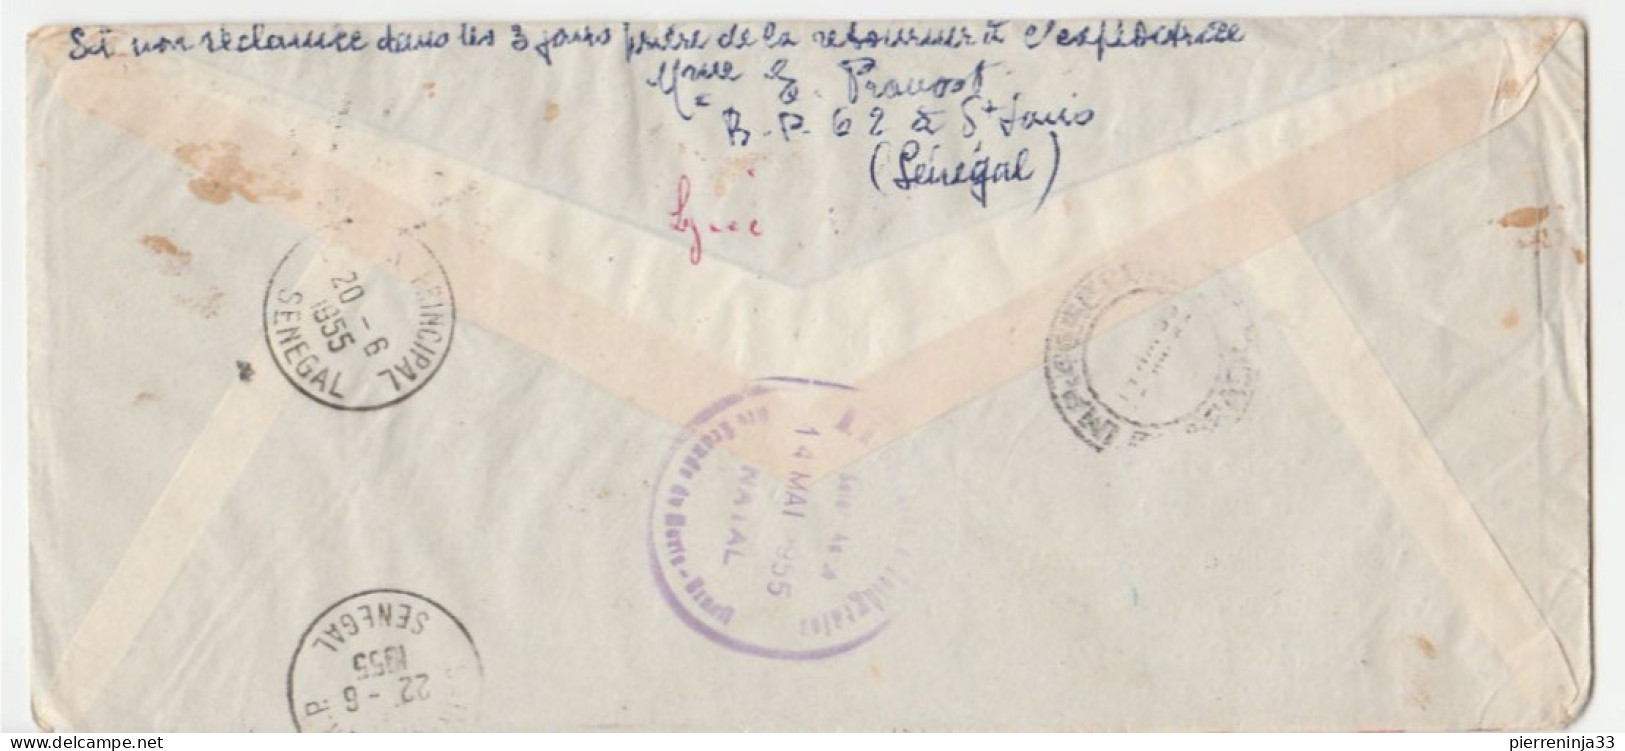 Lettre Recommandée St Louis Du Sénégal/ Liaison Postale Aérienne St Louis Natal/Brésil - Covers & Documents